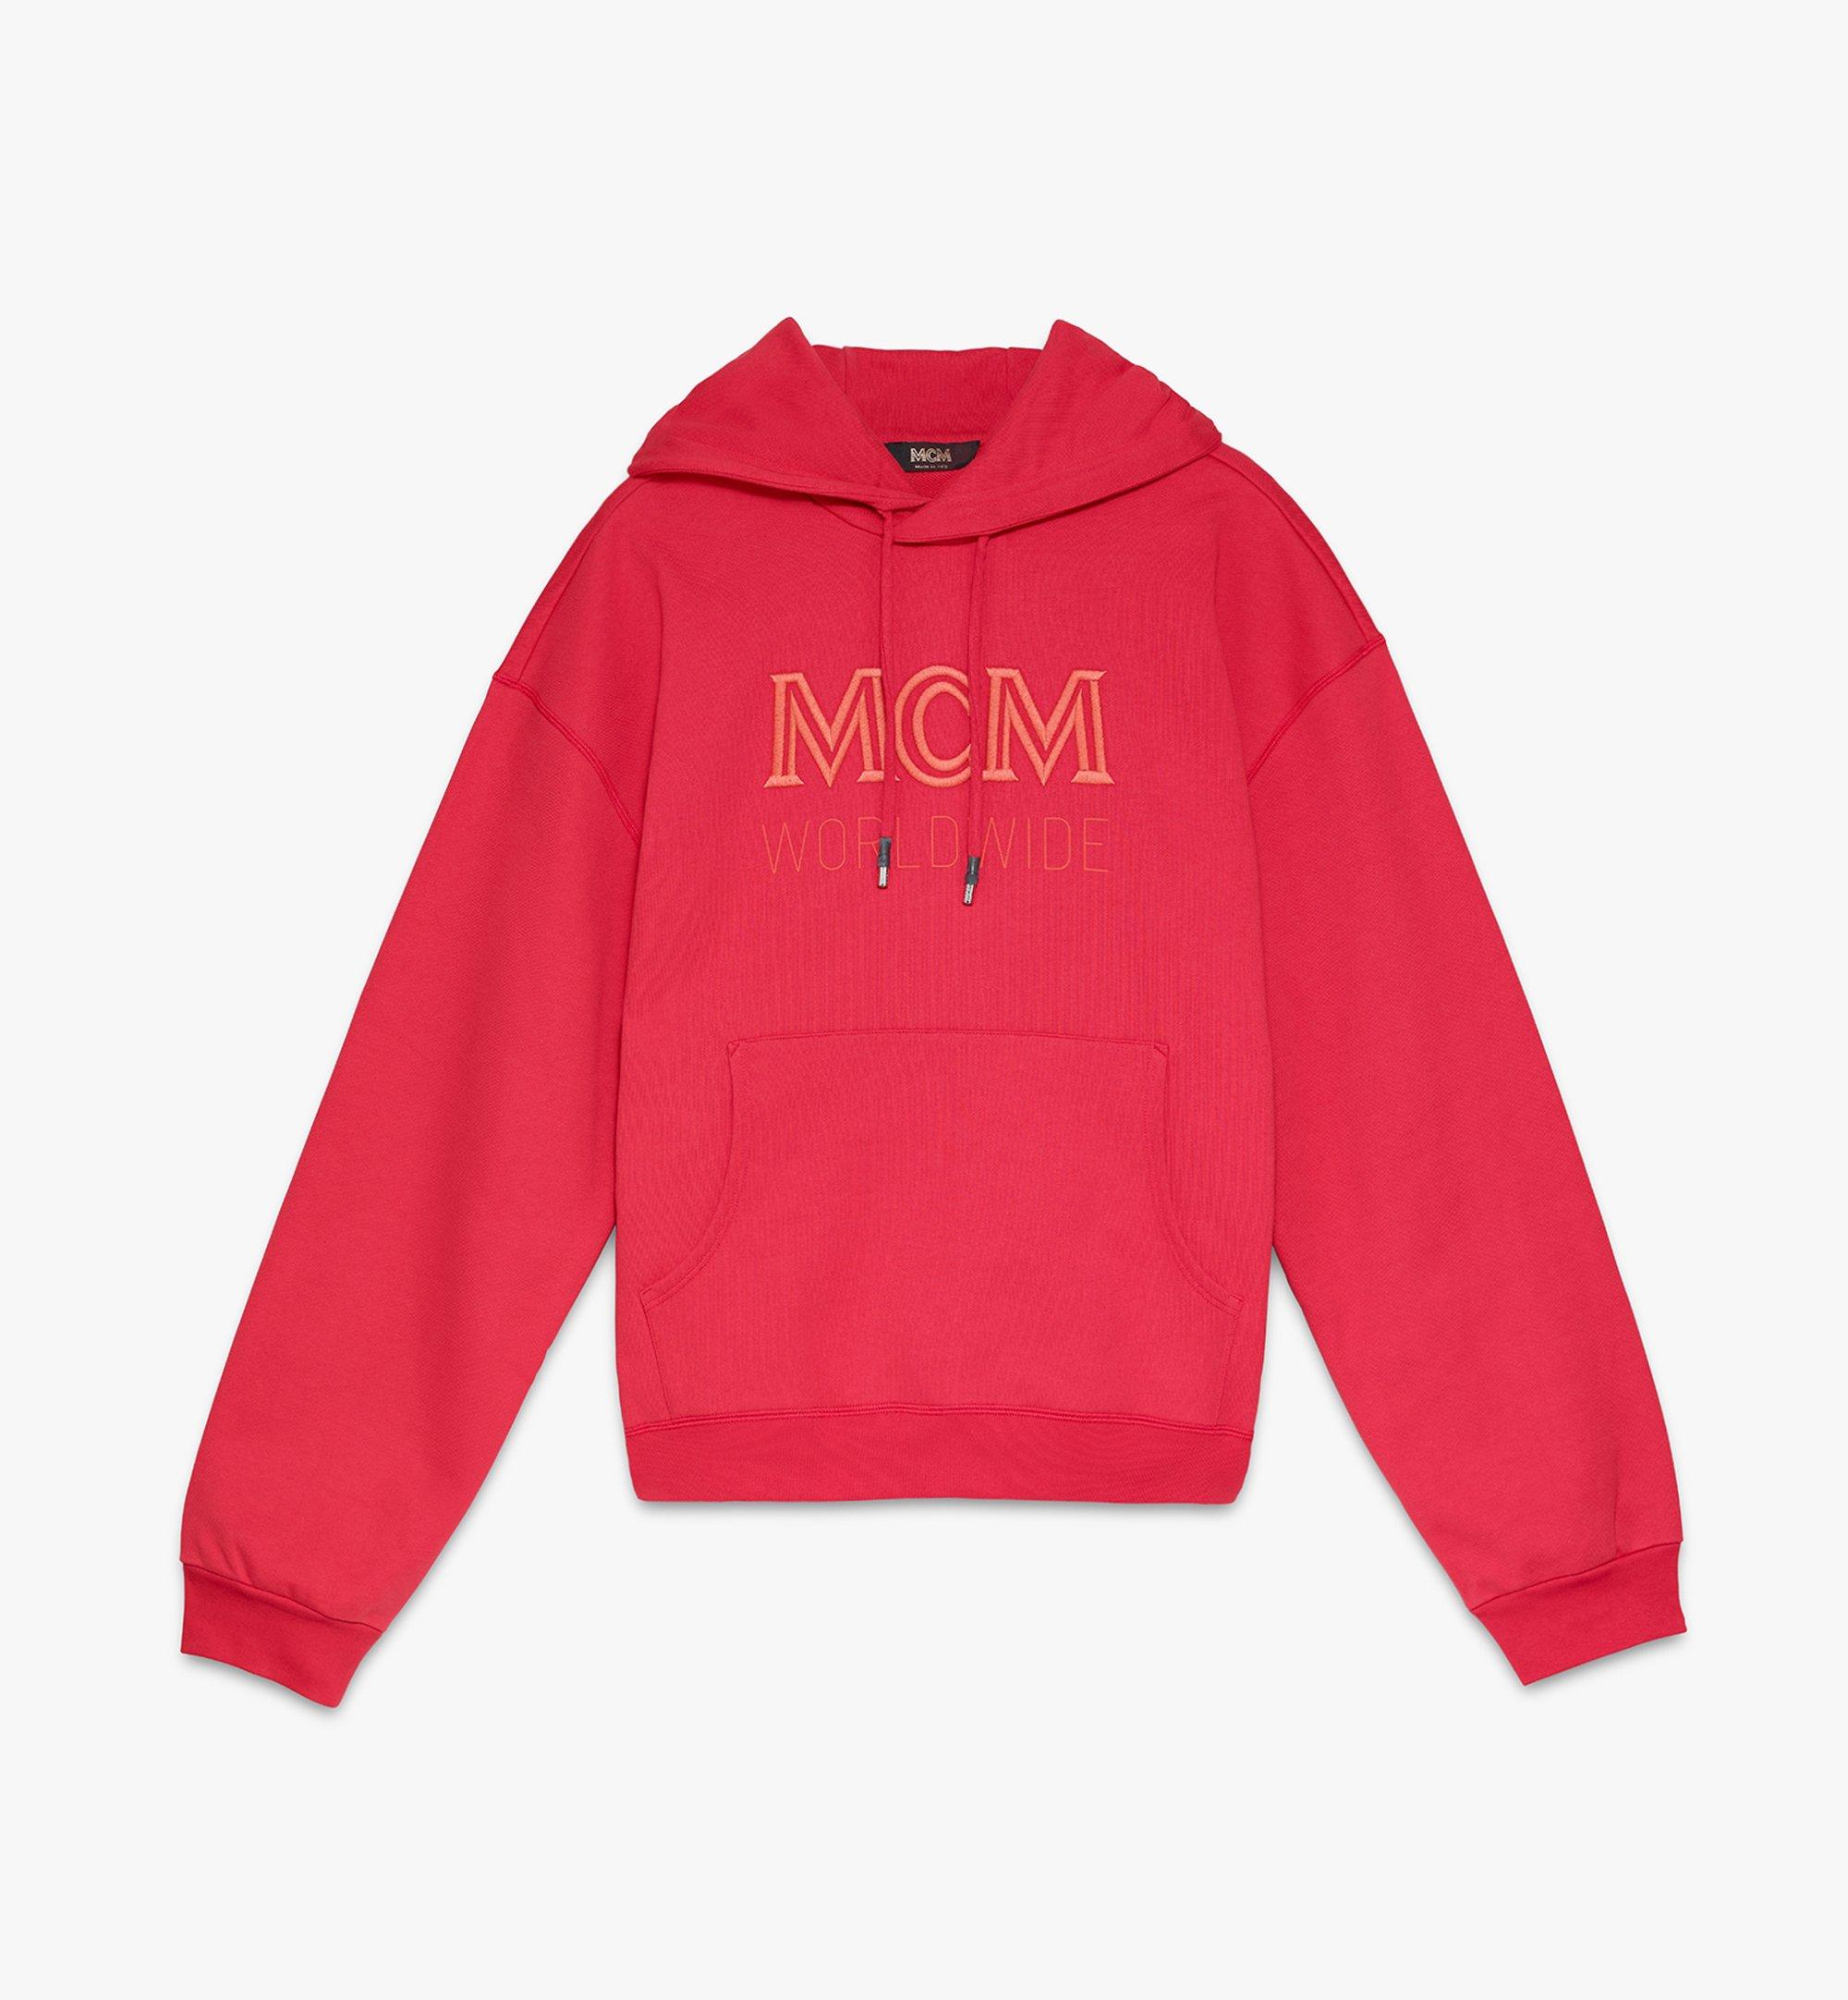 mcm men's sweatshirt